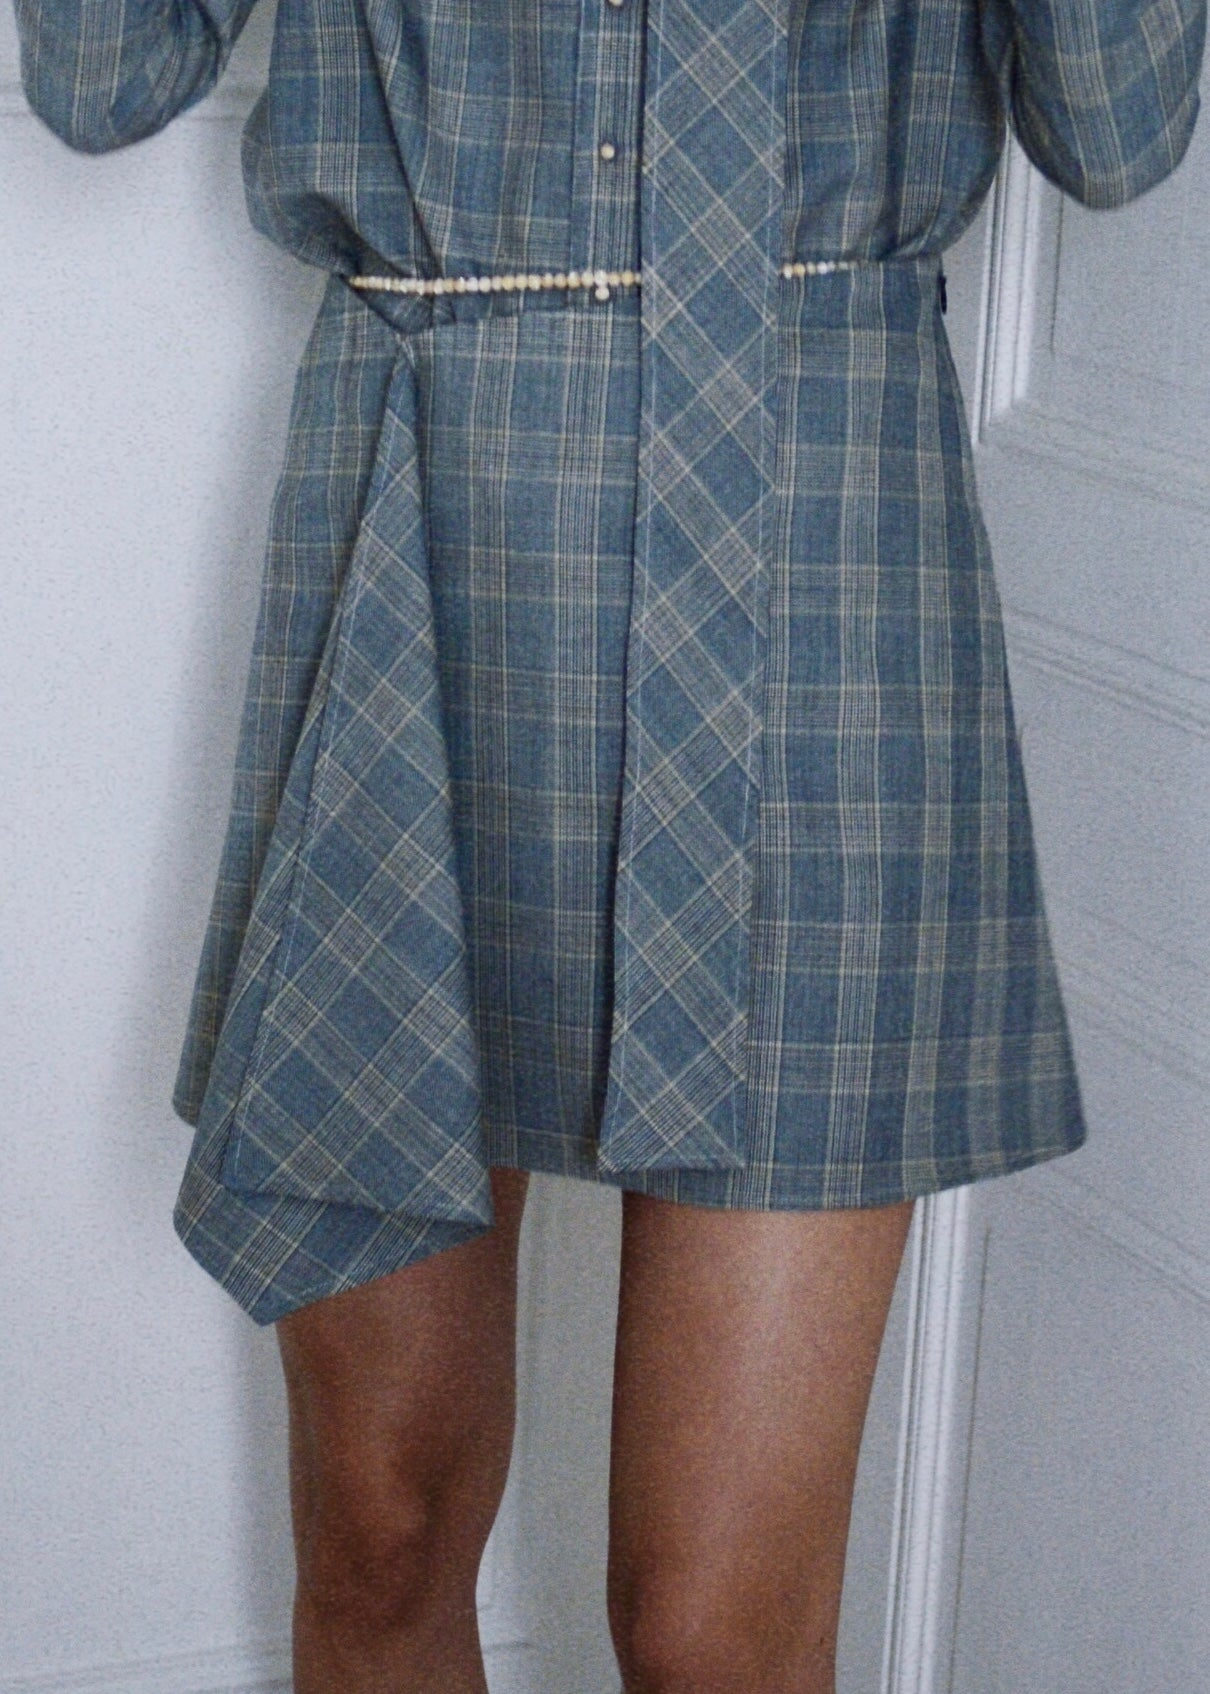 Coogee Skirt